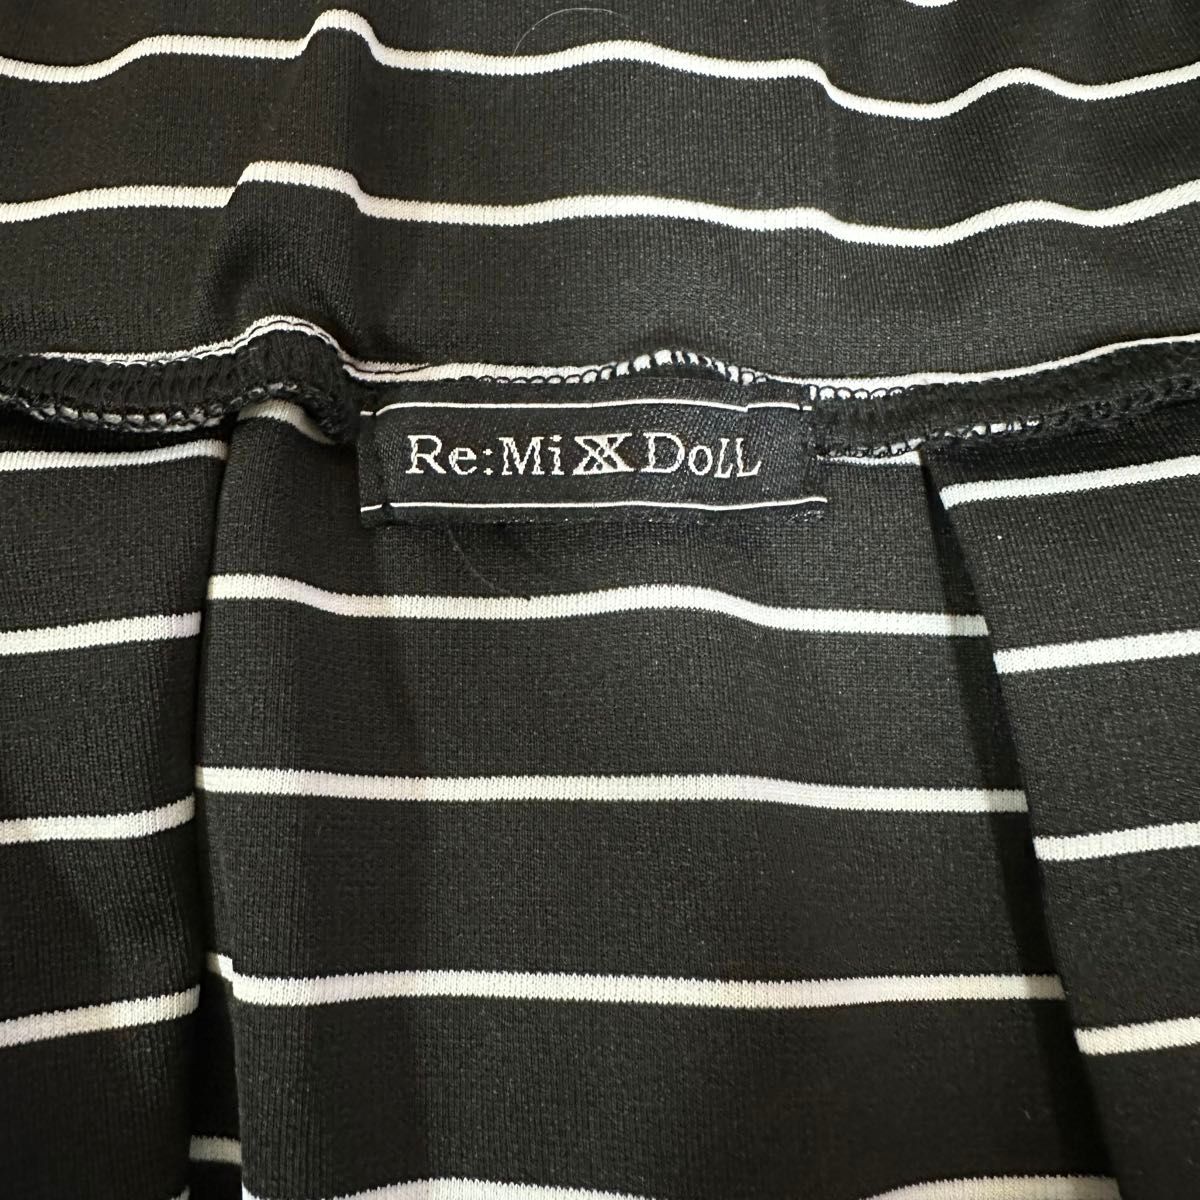 Re:MiX DoLL ミニスカート フレア ボーダー ブラック系